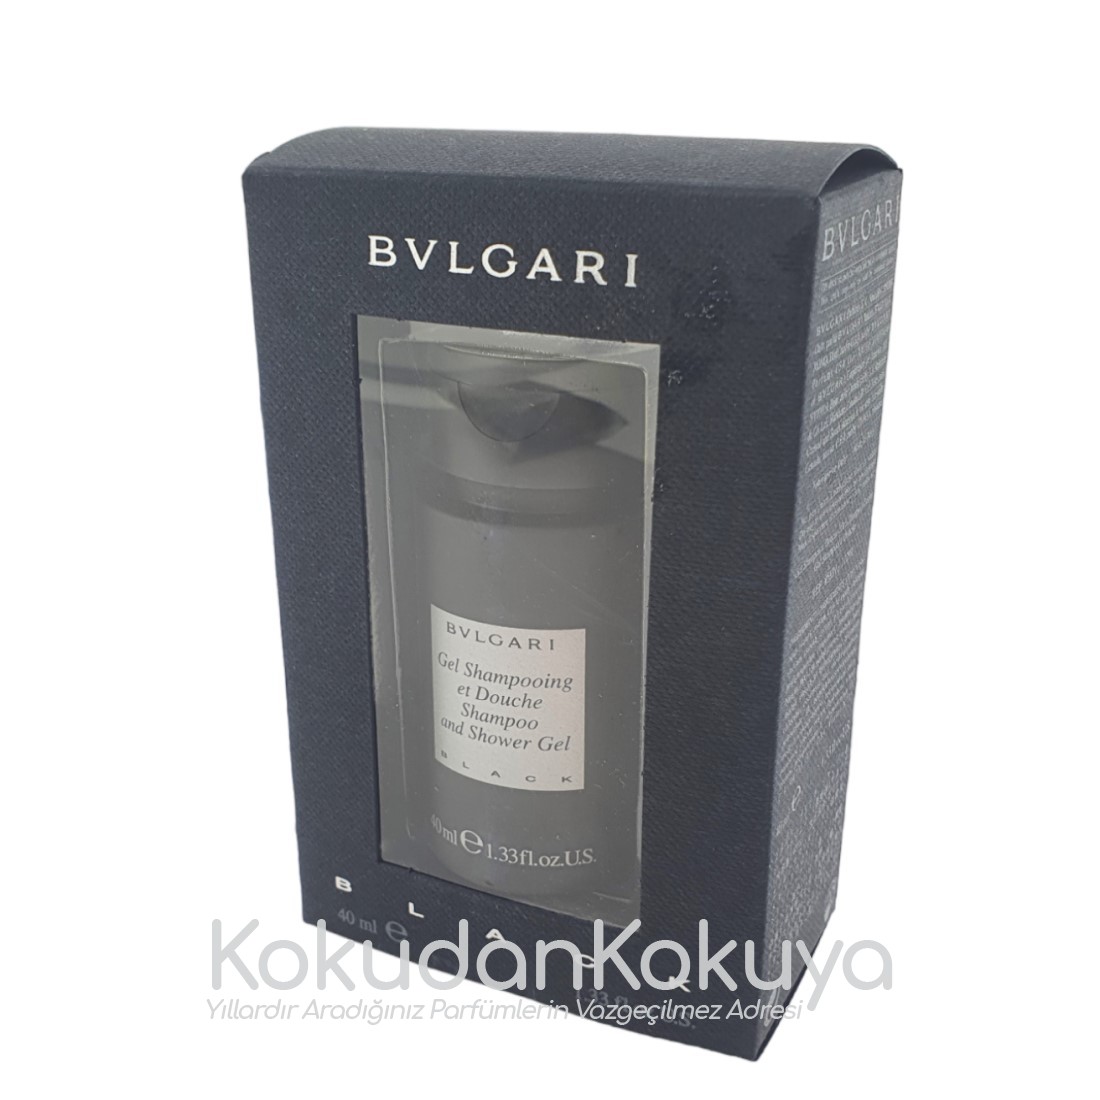 BVLGARI Black (Vintage) Banyo Ürünleri Unisex 40ml Duş Jeli 